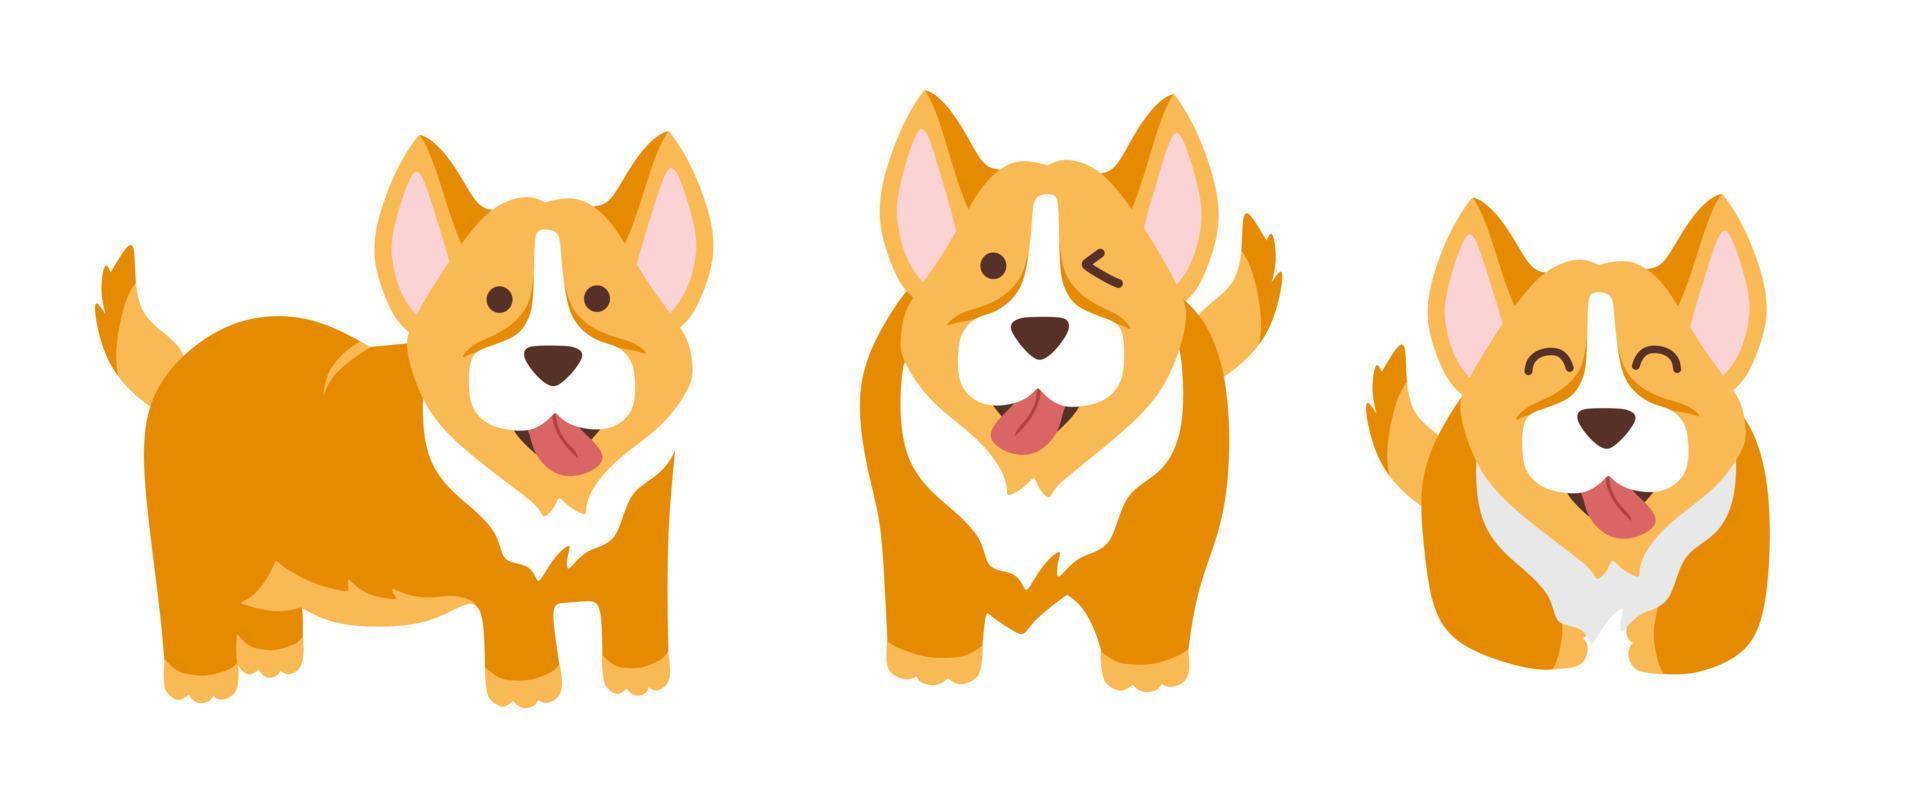 grappige corgi set van 3 honden, vectorillustratie in een vlakke stijl. voor gebruik bij het bedrukken van souvenirs, ansichtkaarten en textiel. vector